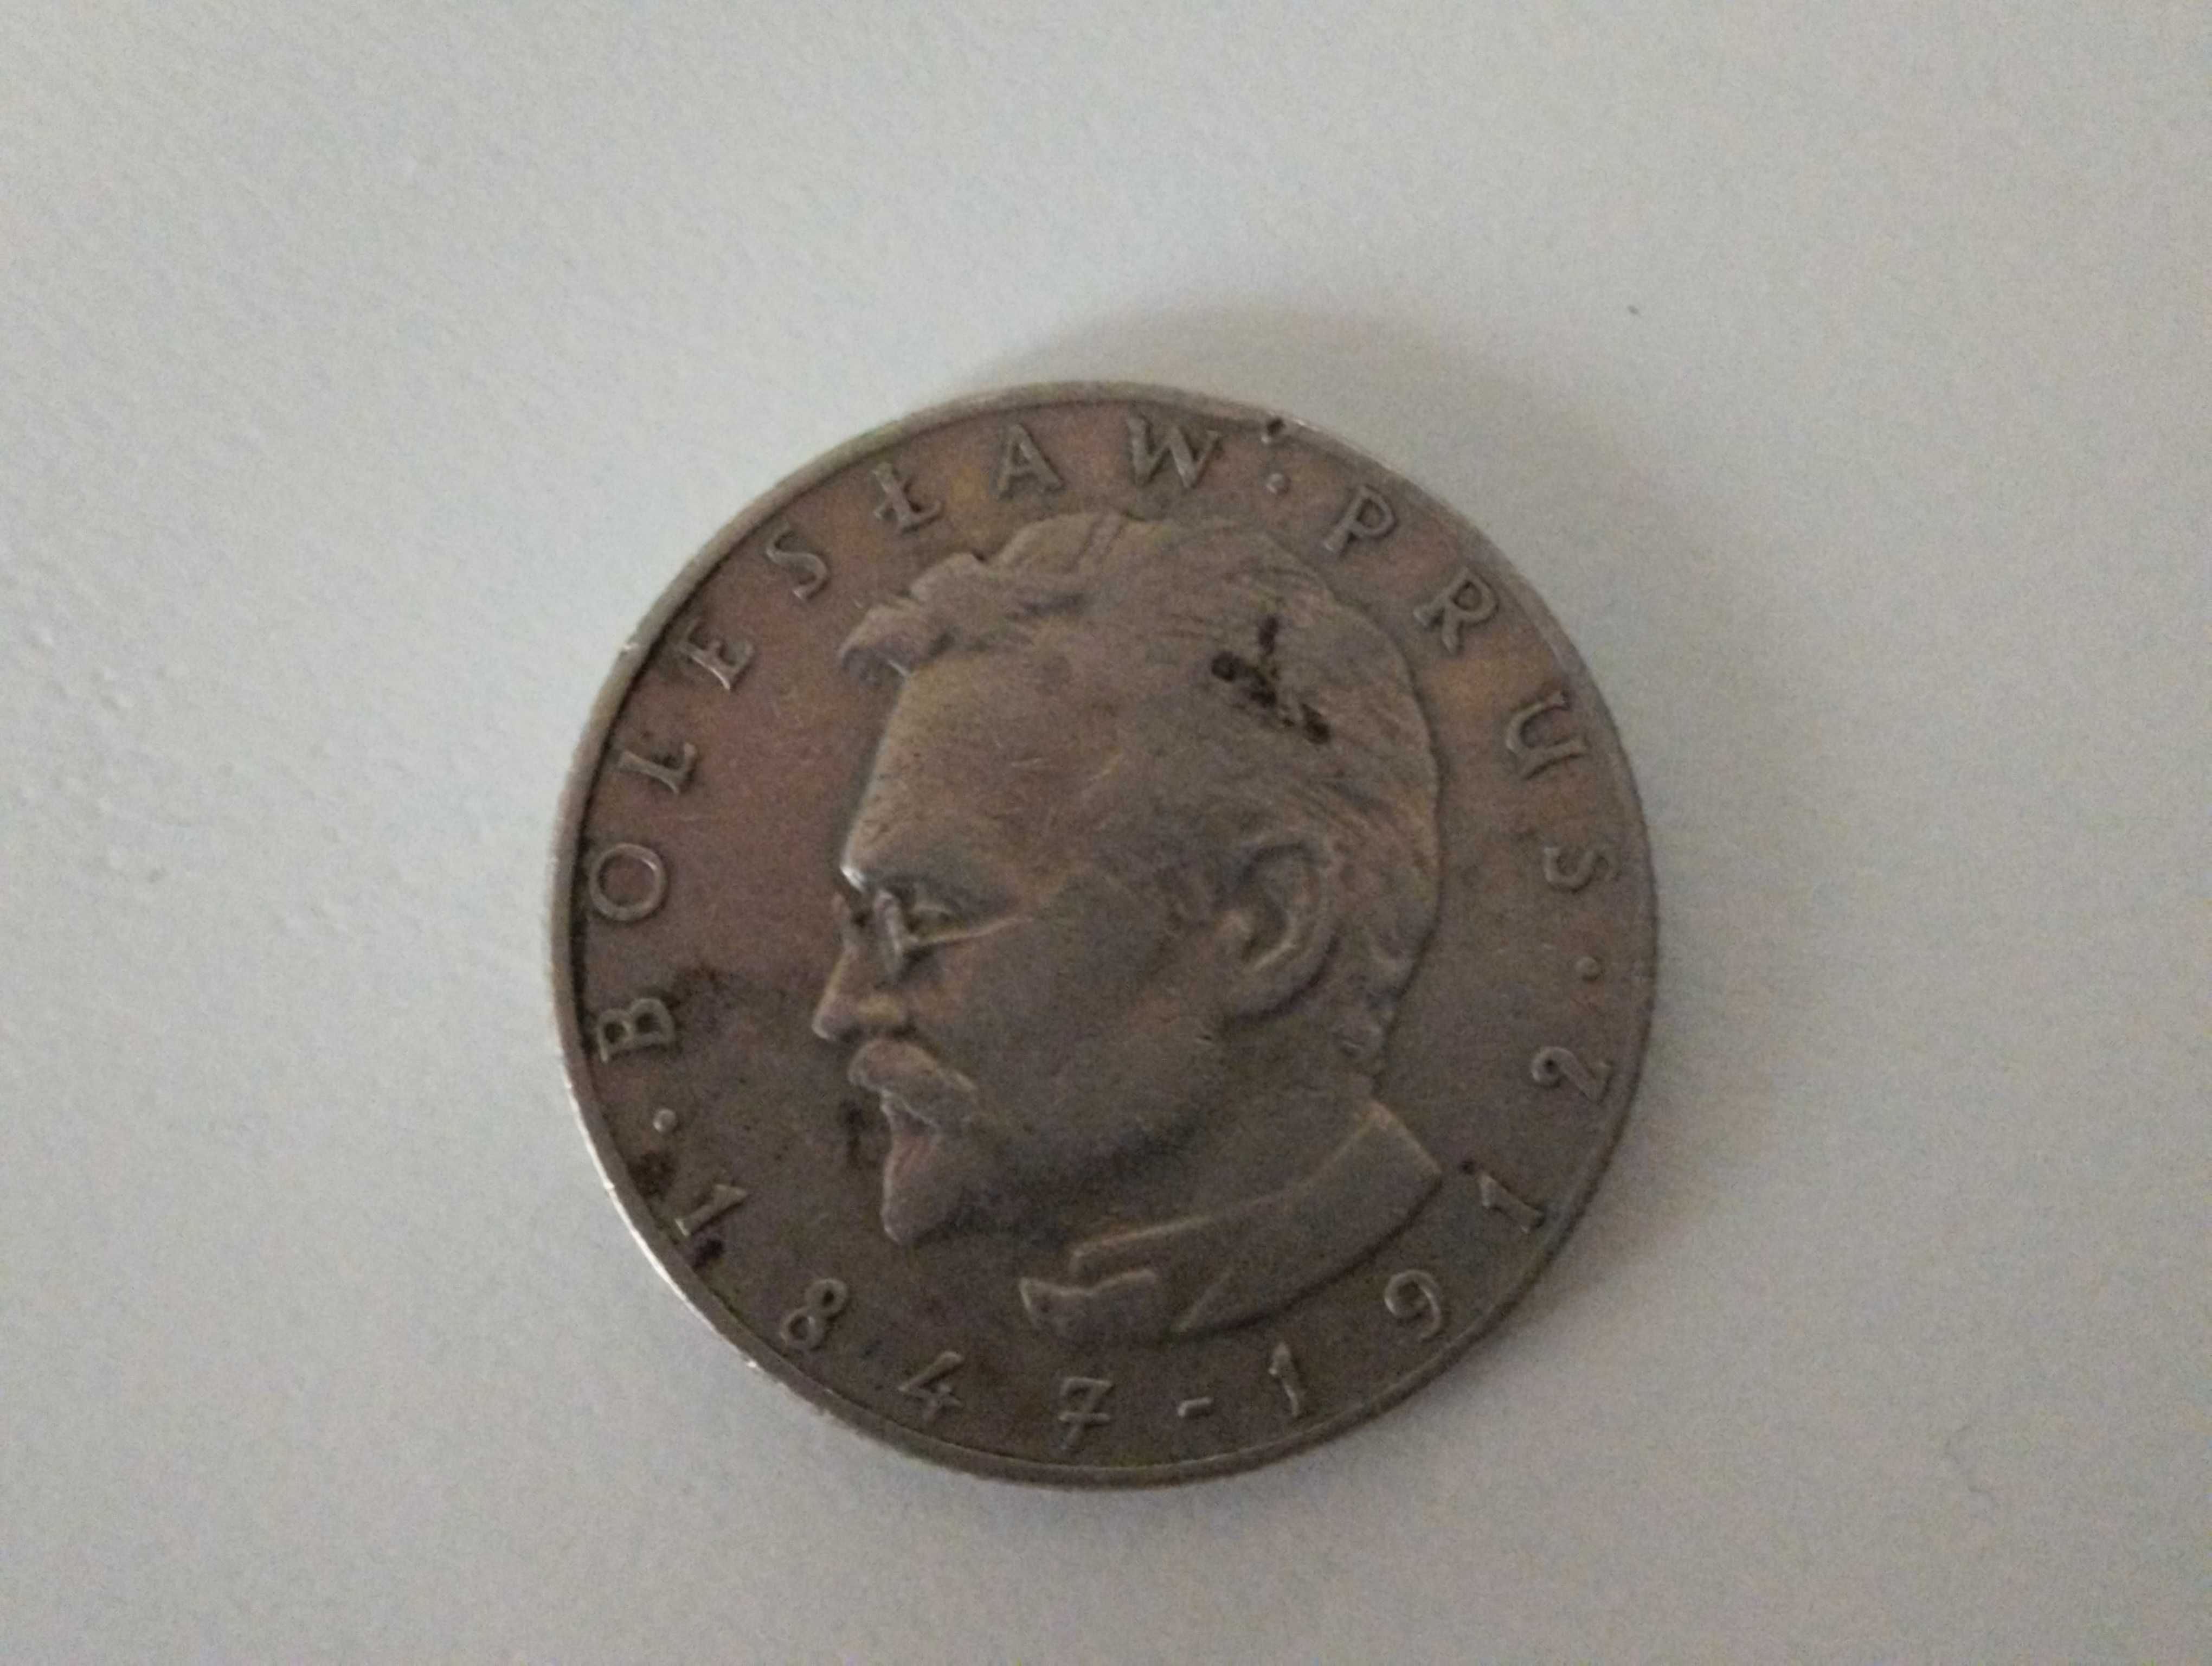 Moneta 10zl Bolesław Prus 1976r